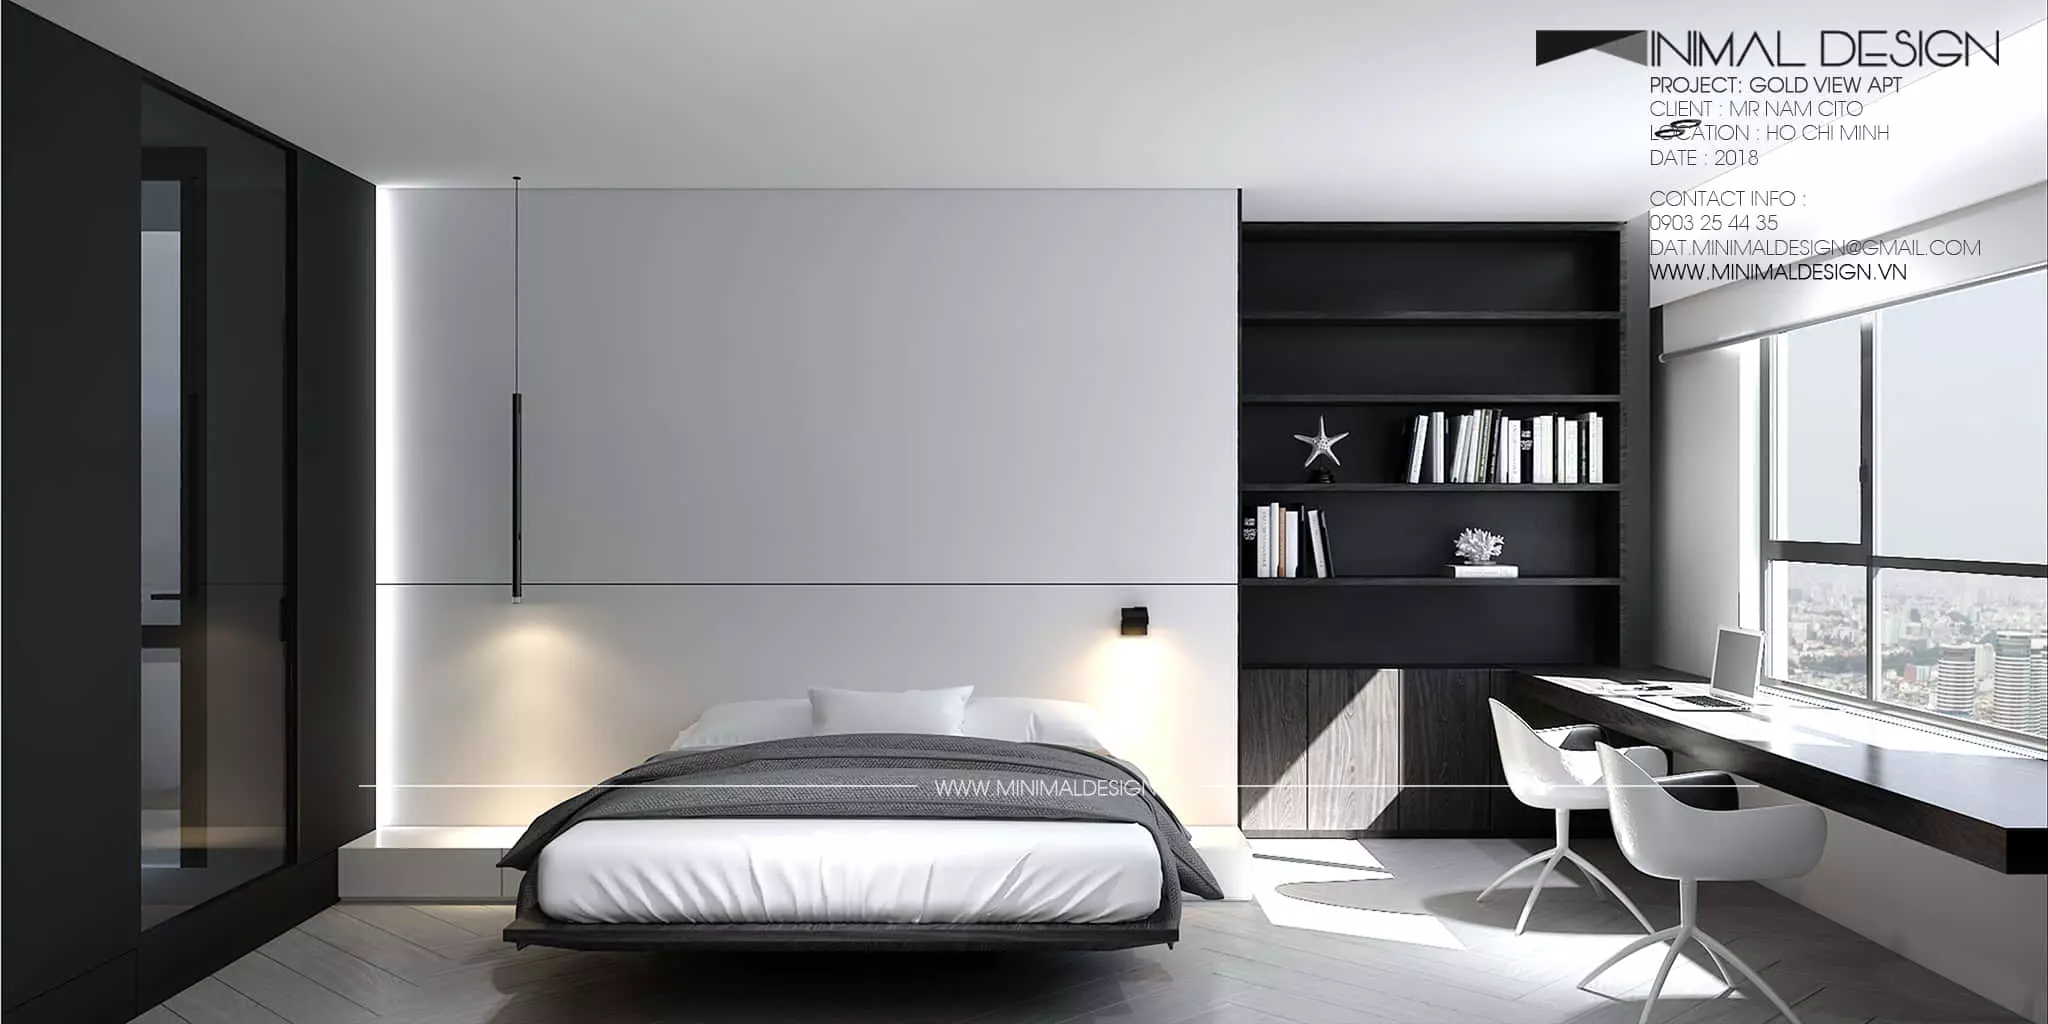 Cải tạo phòng ngủ phong cách tối giản là cách mà nhiều người lựa chọn đổi mới không gian sống biến những điều nhàm chán trở nên khác biệt